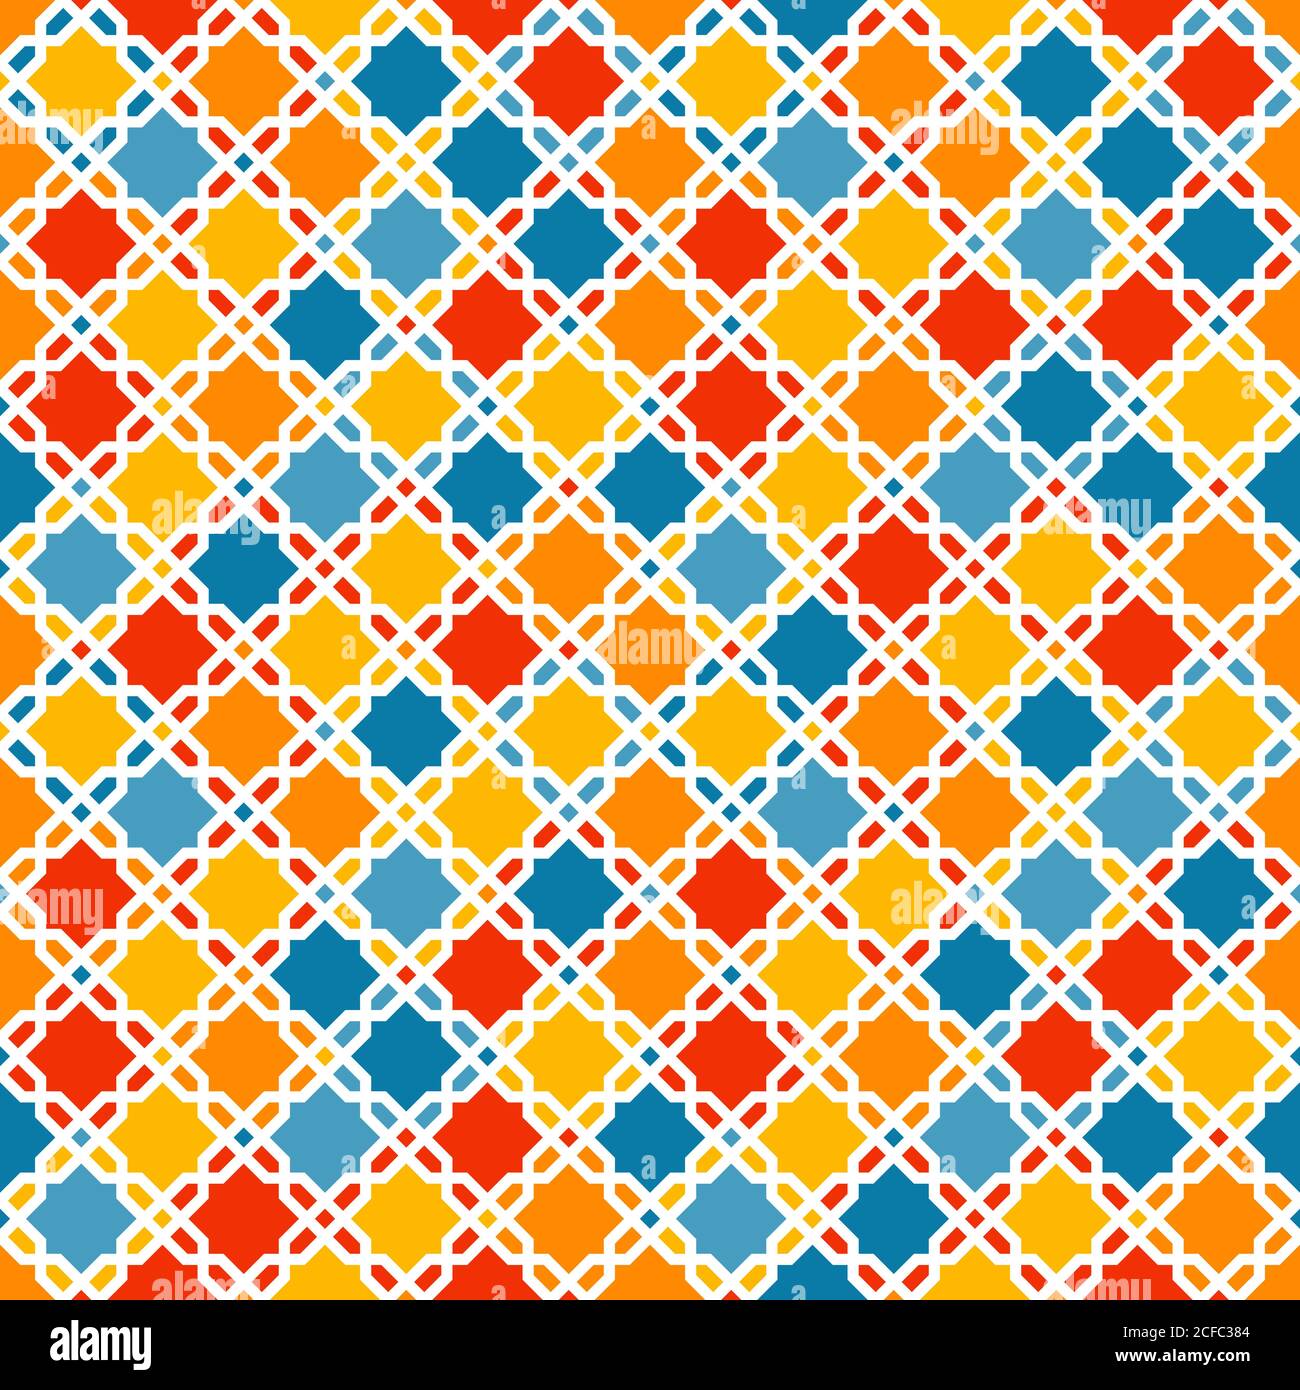 Schema geometrico triangoli astratti. Campioni colorati casuali. Sfondo vettoriale senza giunture. Solo cinque colori - facile da colorare. Illustrazione Vettoriale